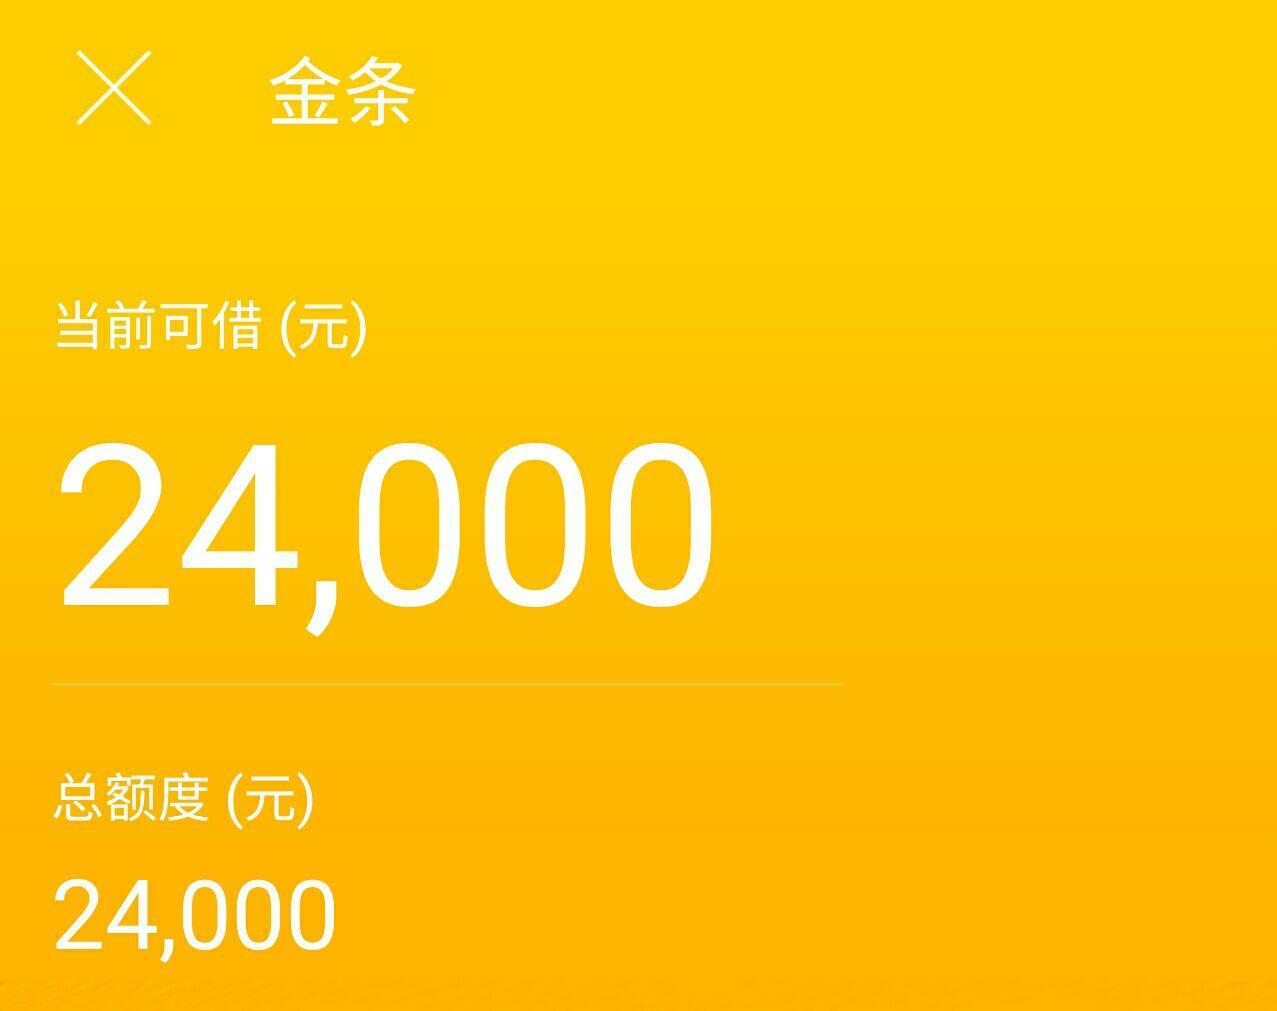 我QQ被别人盗了,在京东欠了5千多元,现在京东